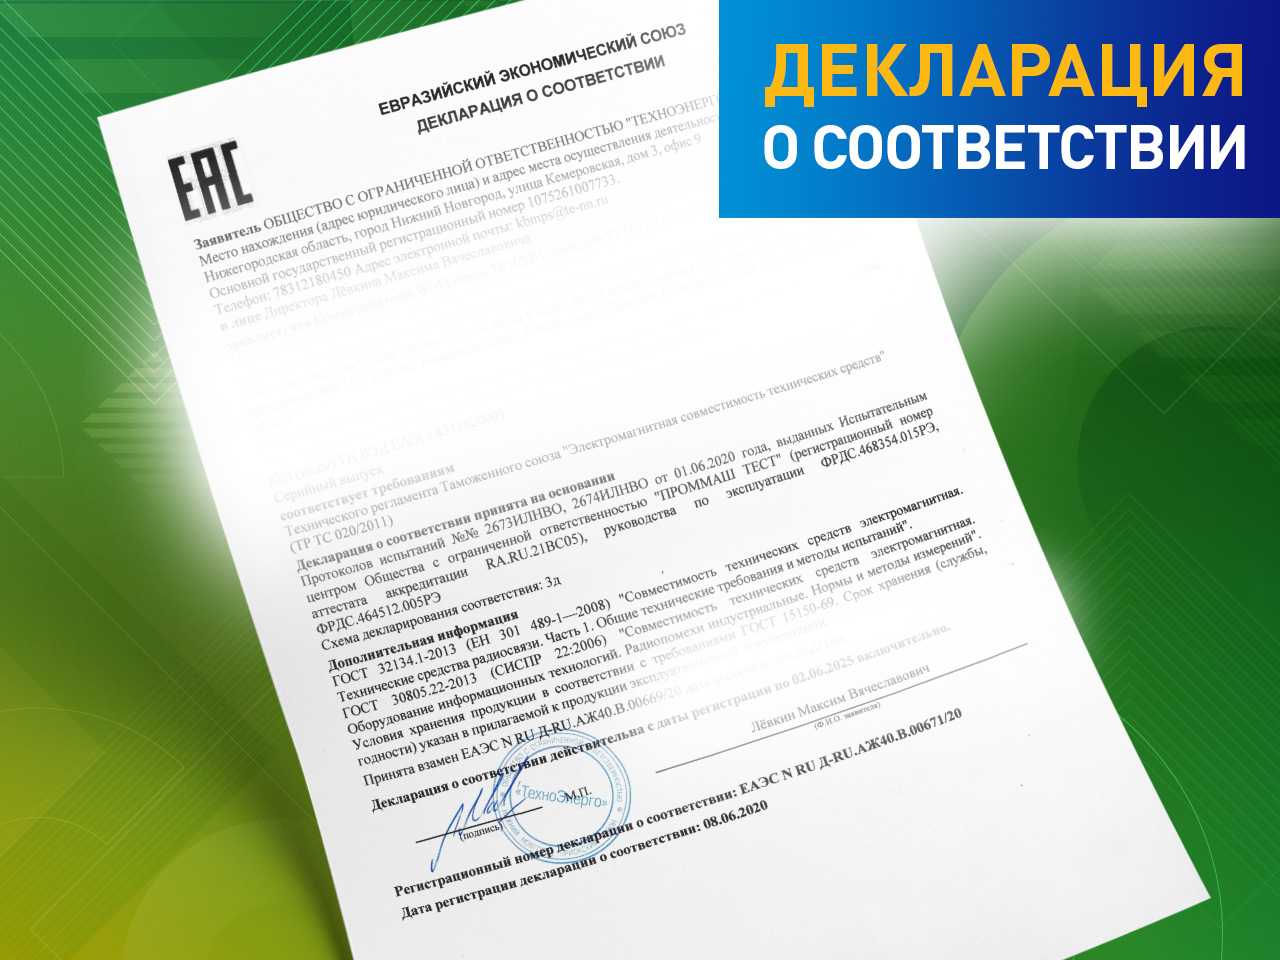 Обновление декларации о соответствии на счетчики электроэнергии СЭТ-4ТМ.03МТ и СЭТ-4ТМ.02МТ